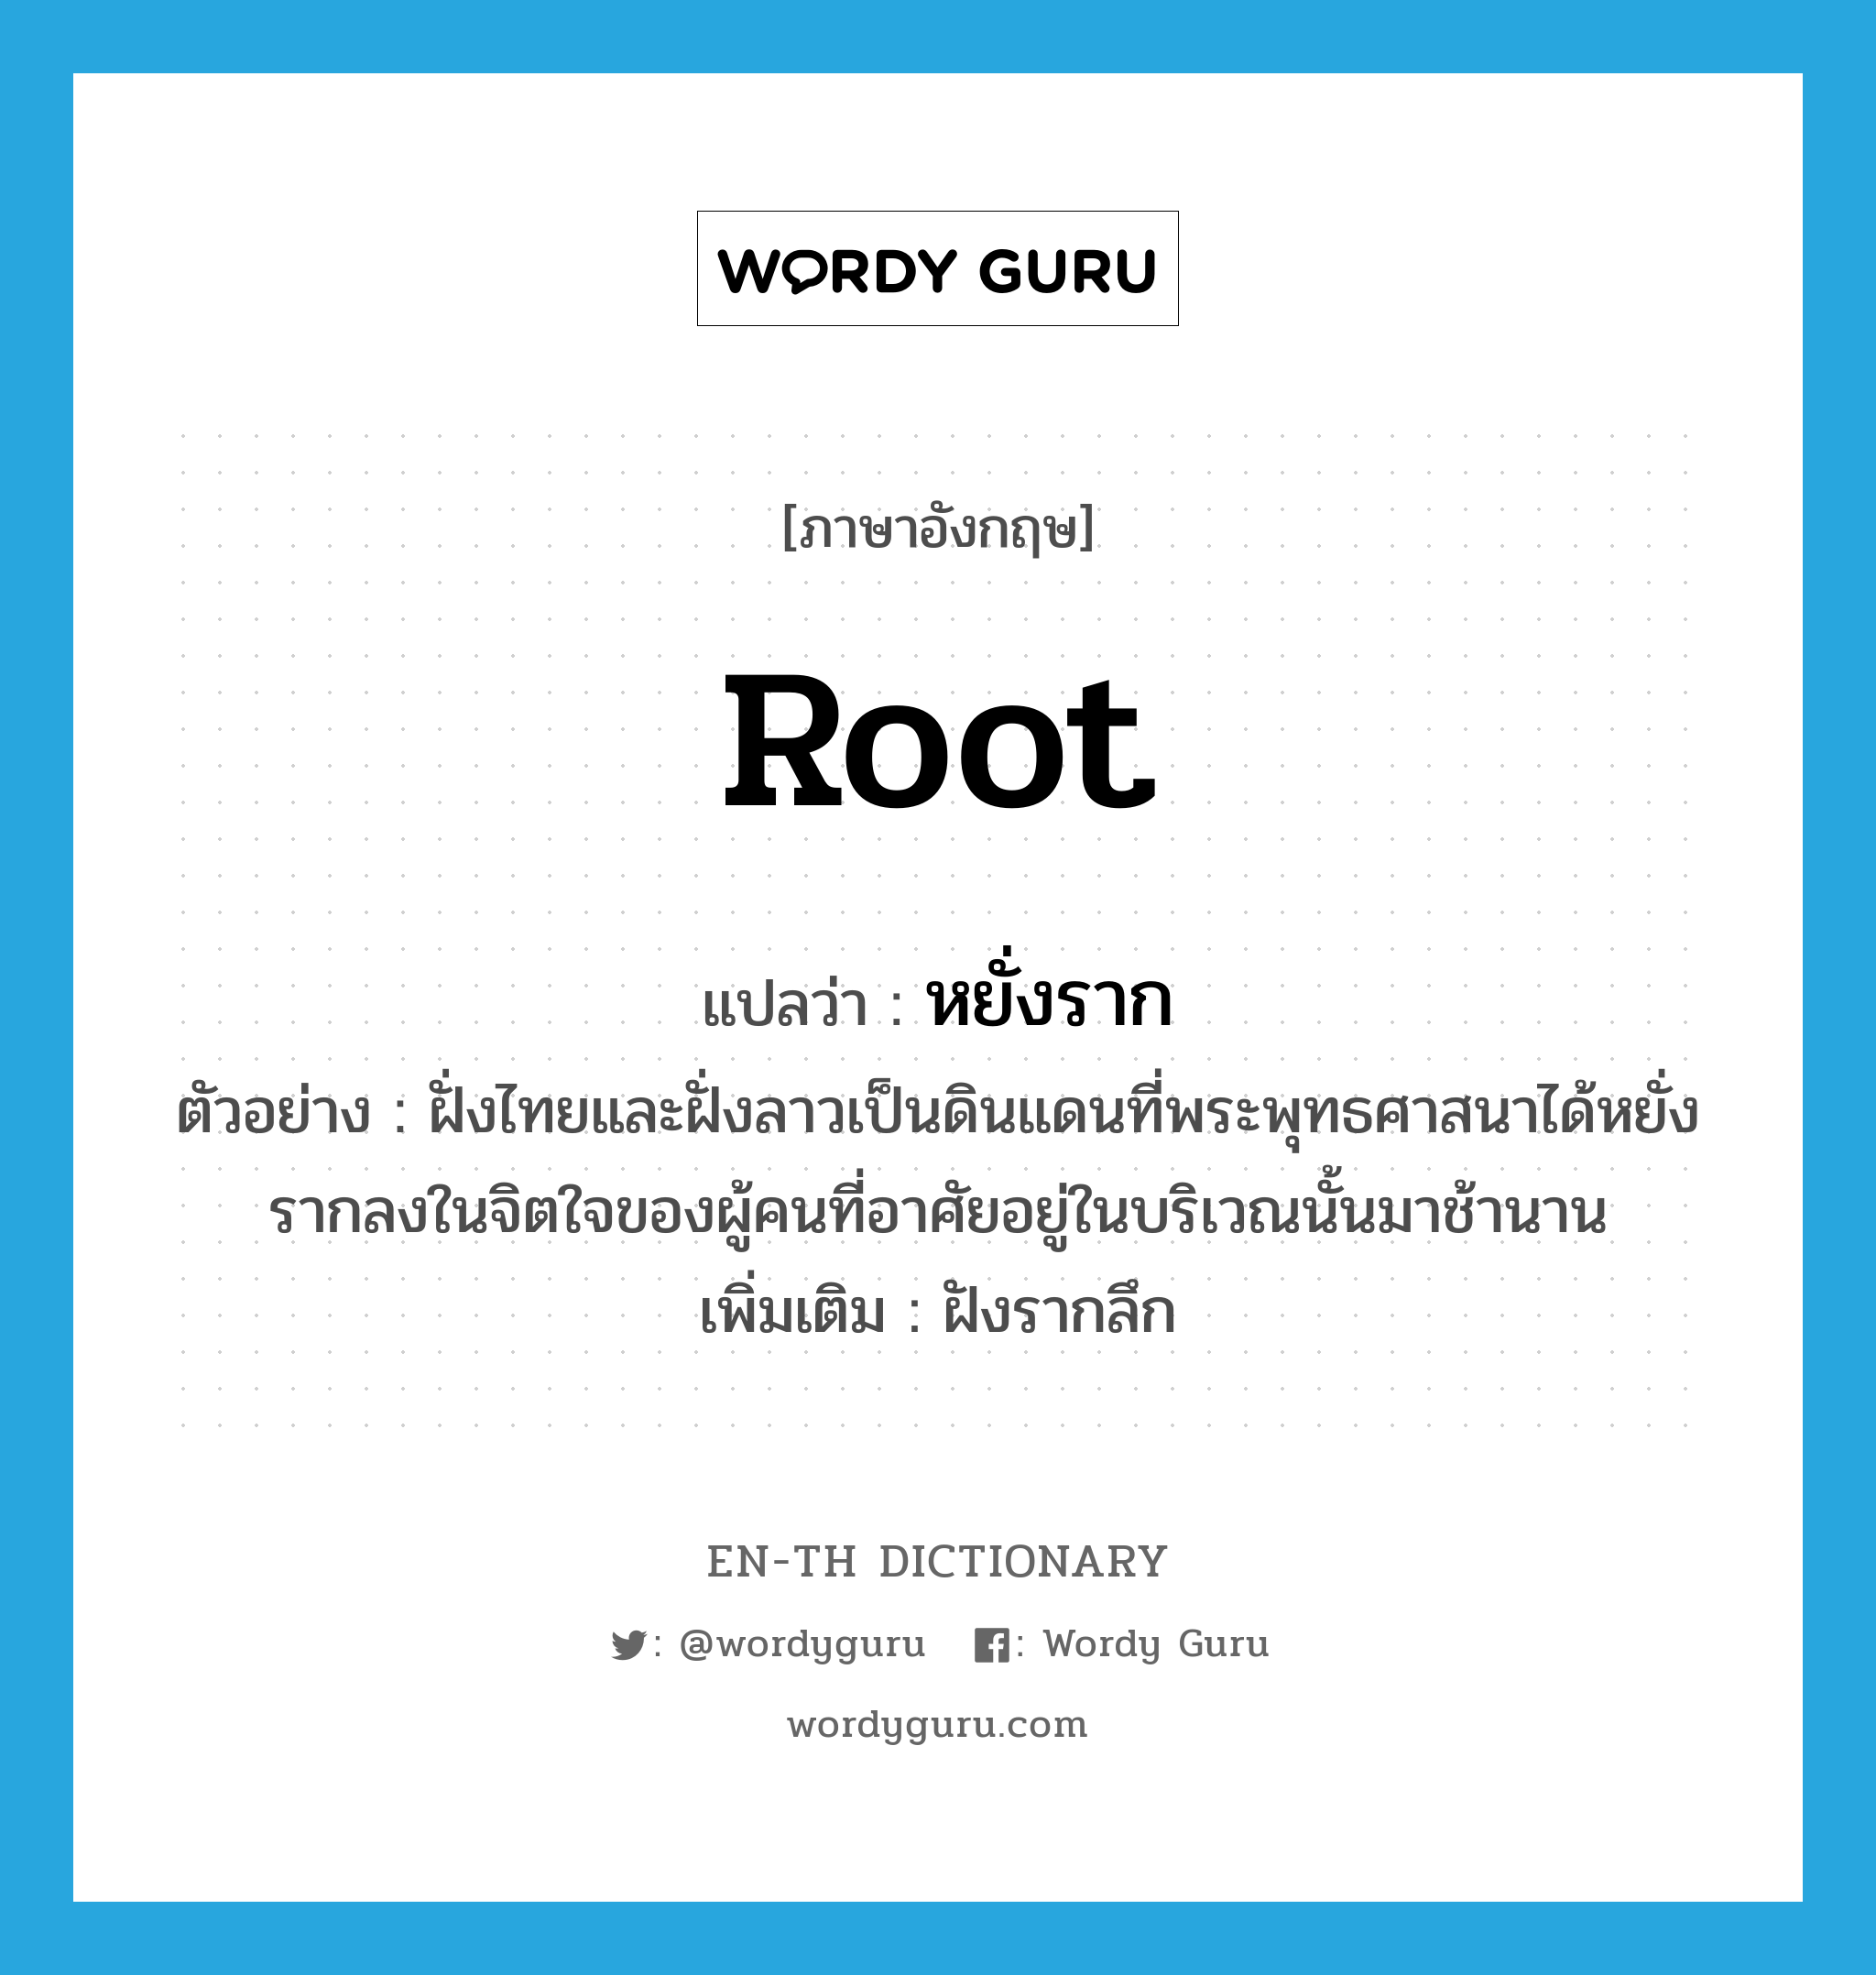 root แปลว่า?, คำศัพท์ภาษาอังกฤษ root แปลว่า หยั่งราก ประเภท V ตัวอย่าง ฝั่งไทยและฝั่งลาวเป็นดินแดนที่พระพุทธศาสนาได้หยั่งรากลงในจิตใจของผู้คนที่อาศัยอยู่ในบริเวณนั้นมาช้านาน เพิ่มเติม ฝังรากลึก หมวด V